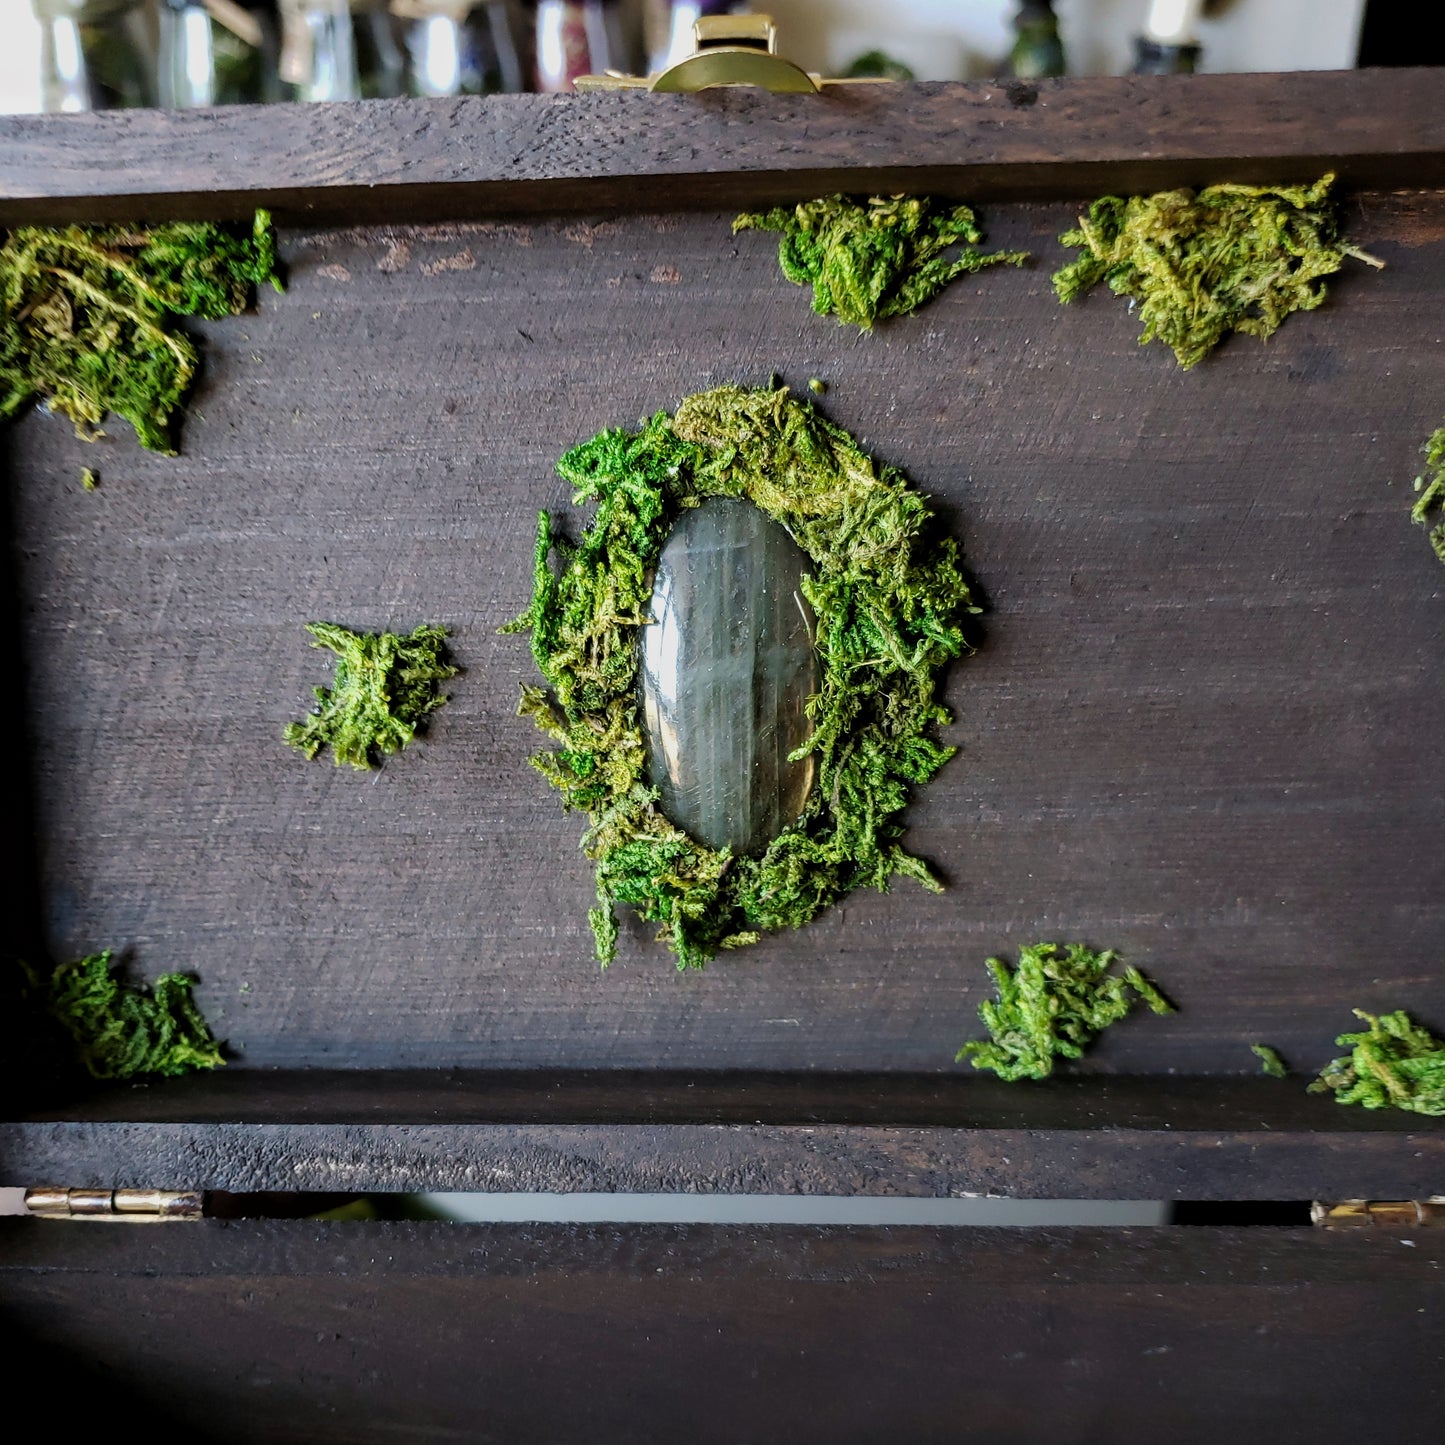 Floral Moon Altar Box with a Hidden Crystal